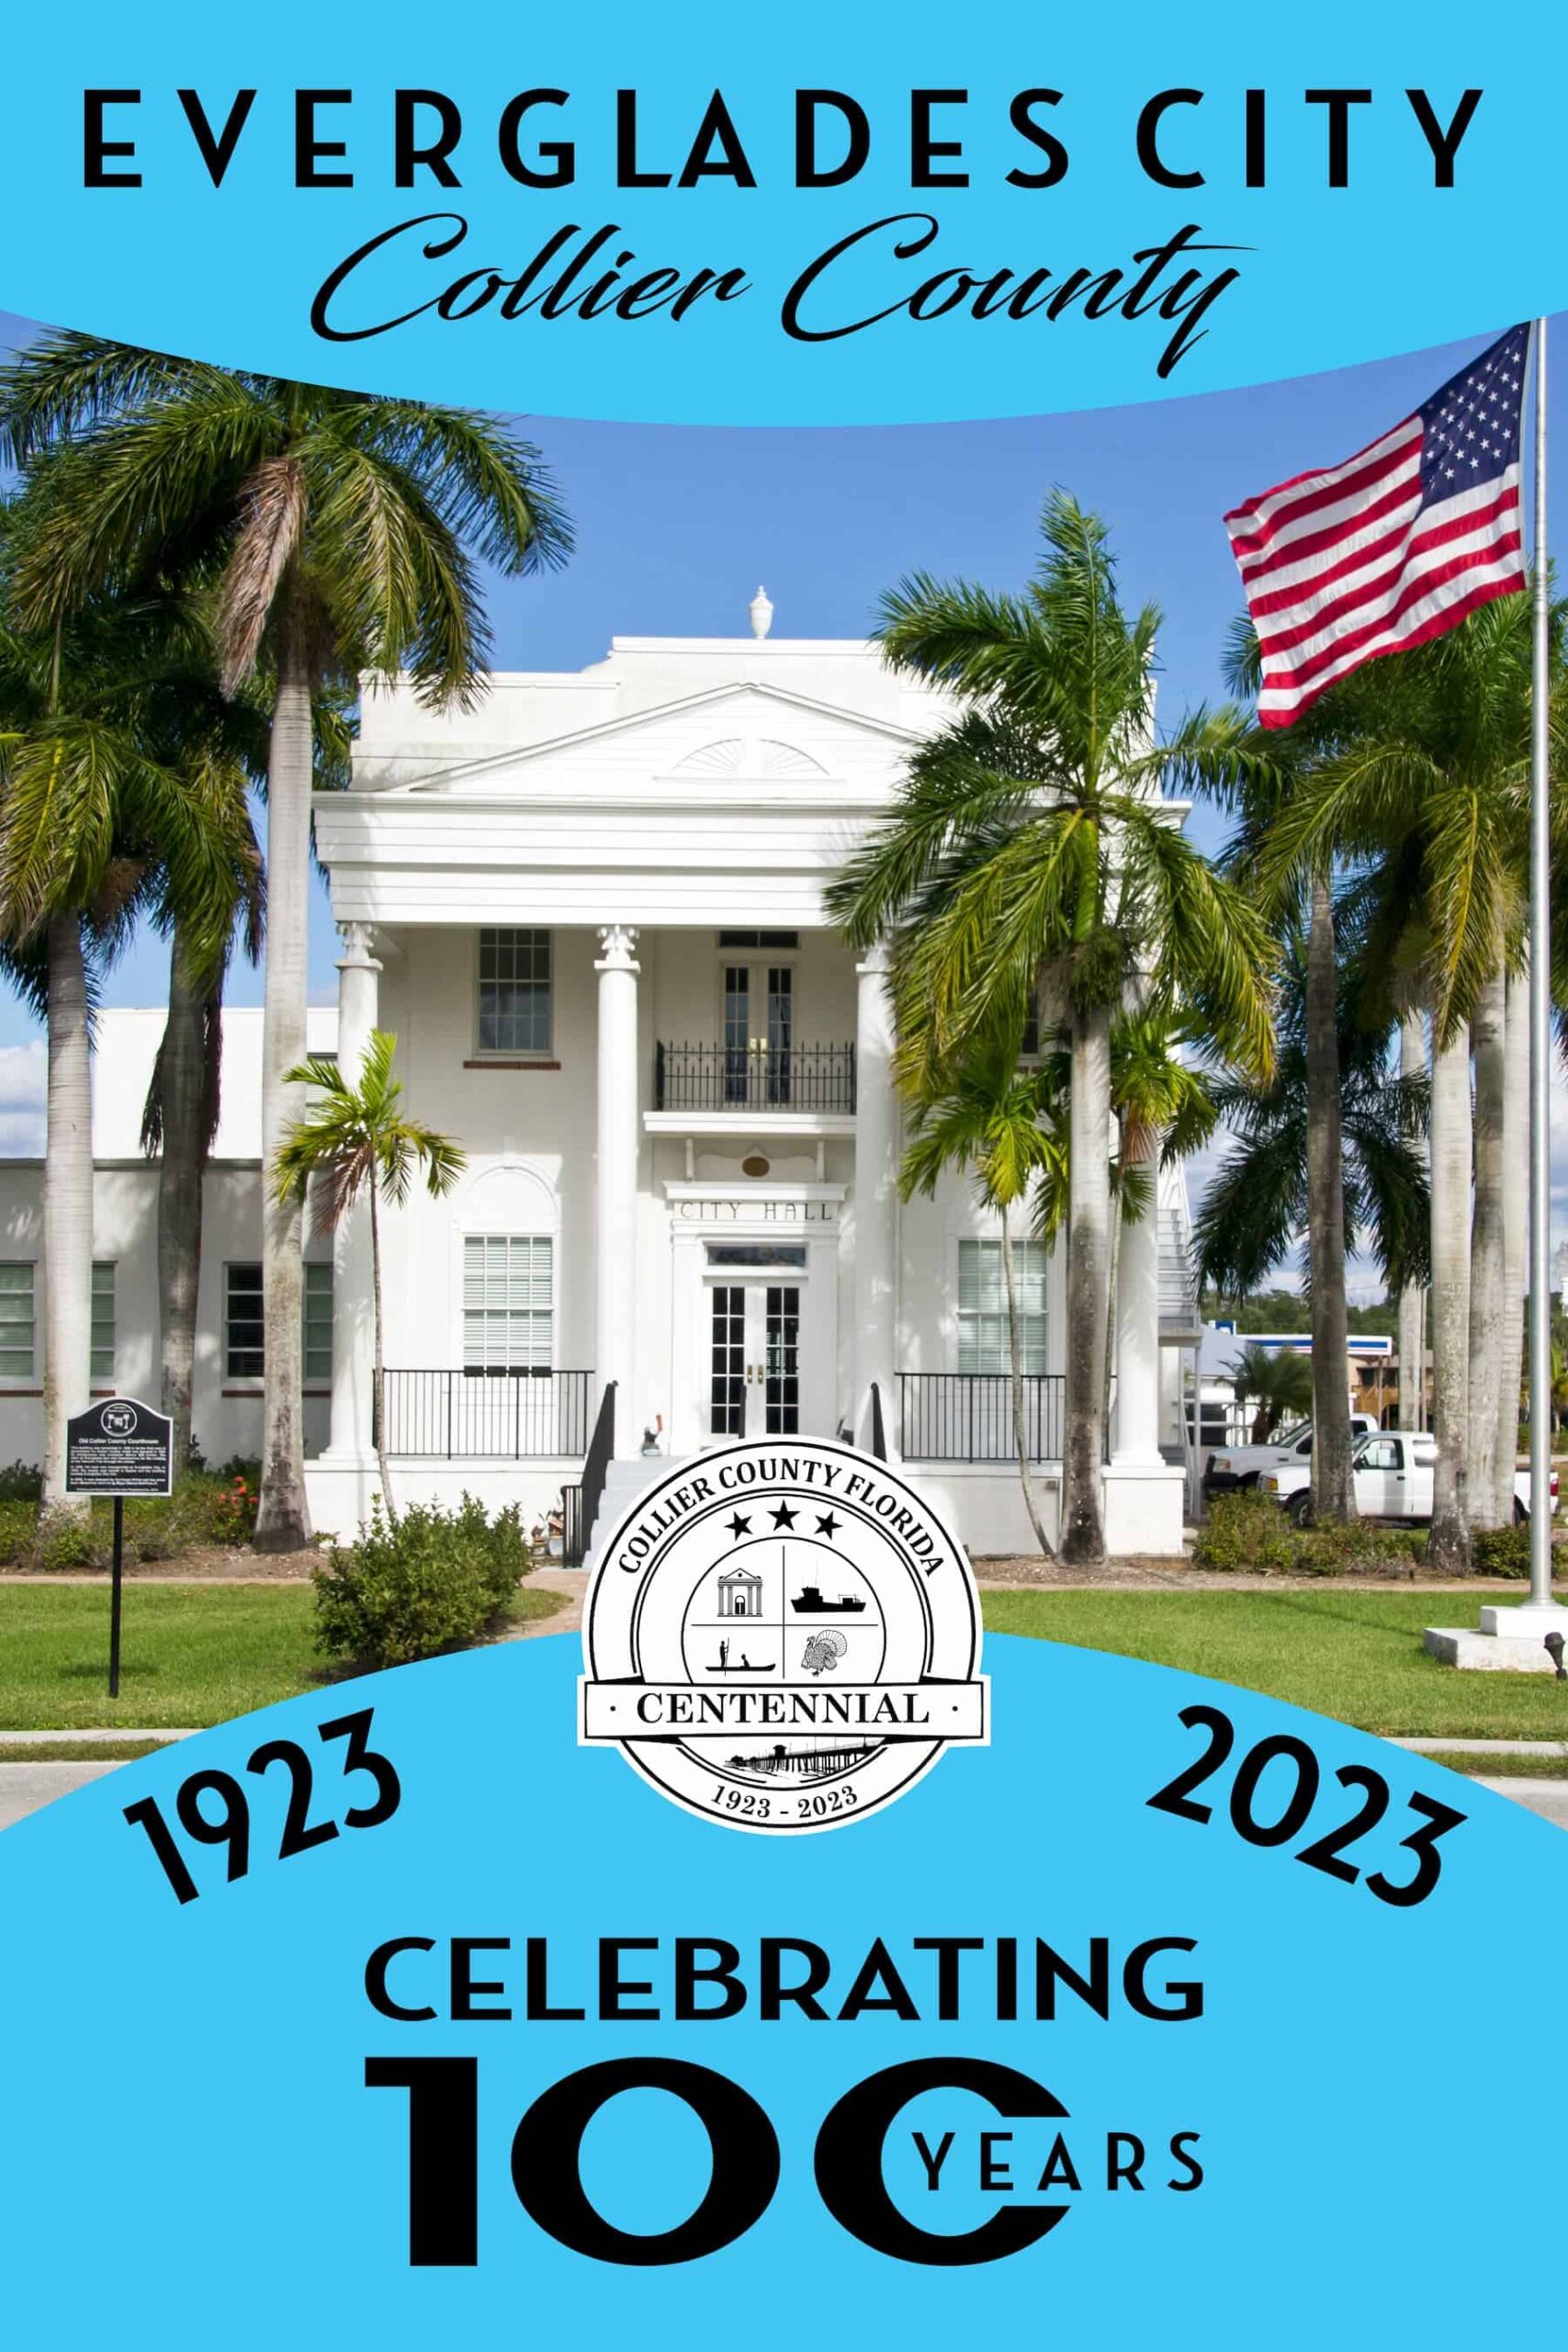 City Hall image - Celebrating 100 Years